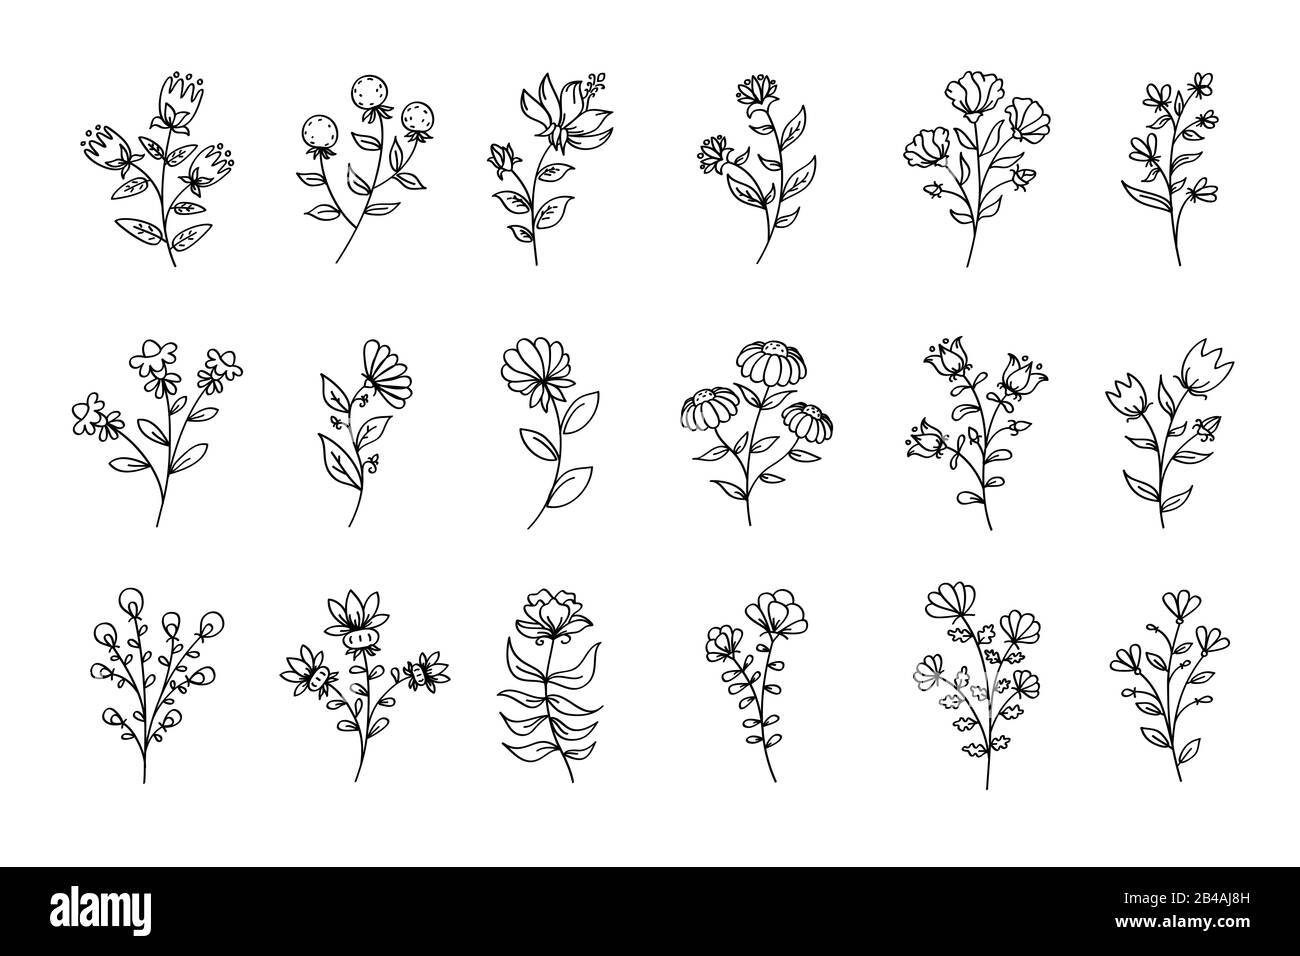 Ensemble de fleurs, fleurs d'art de ligne noire, illustrations florales vectorielles, dessins de fleurs, dessin de ligne, ensemble floral stylisé artistique Banque D'Images